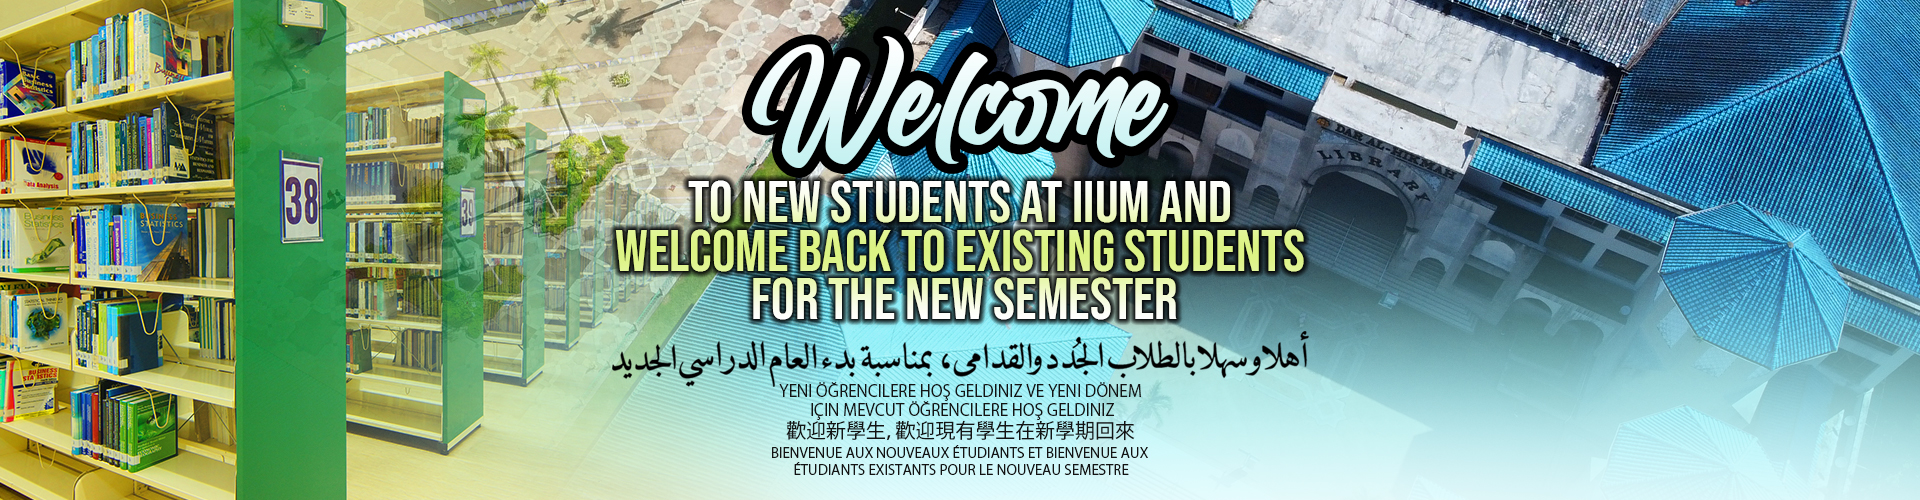 iium-lib-welcome-students